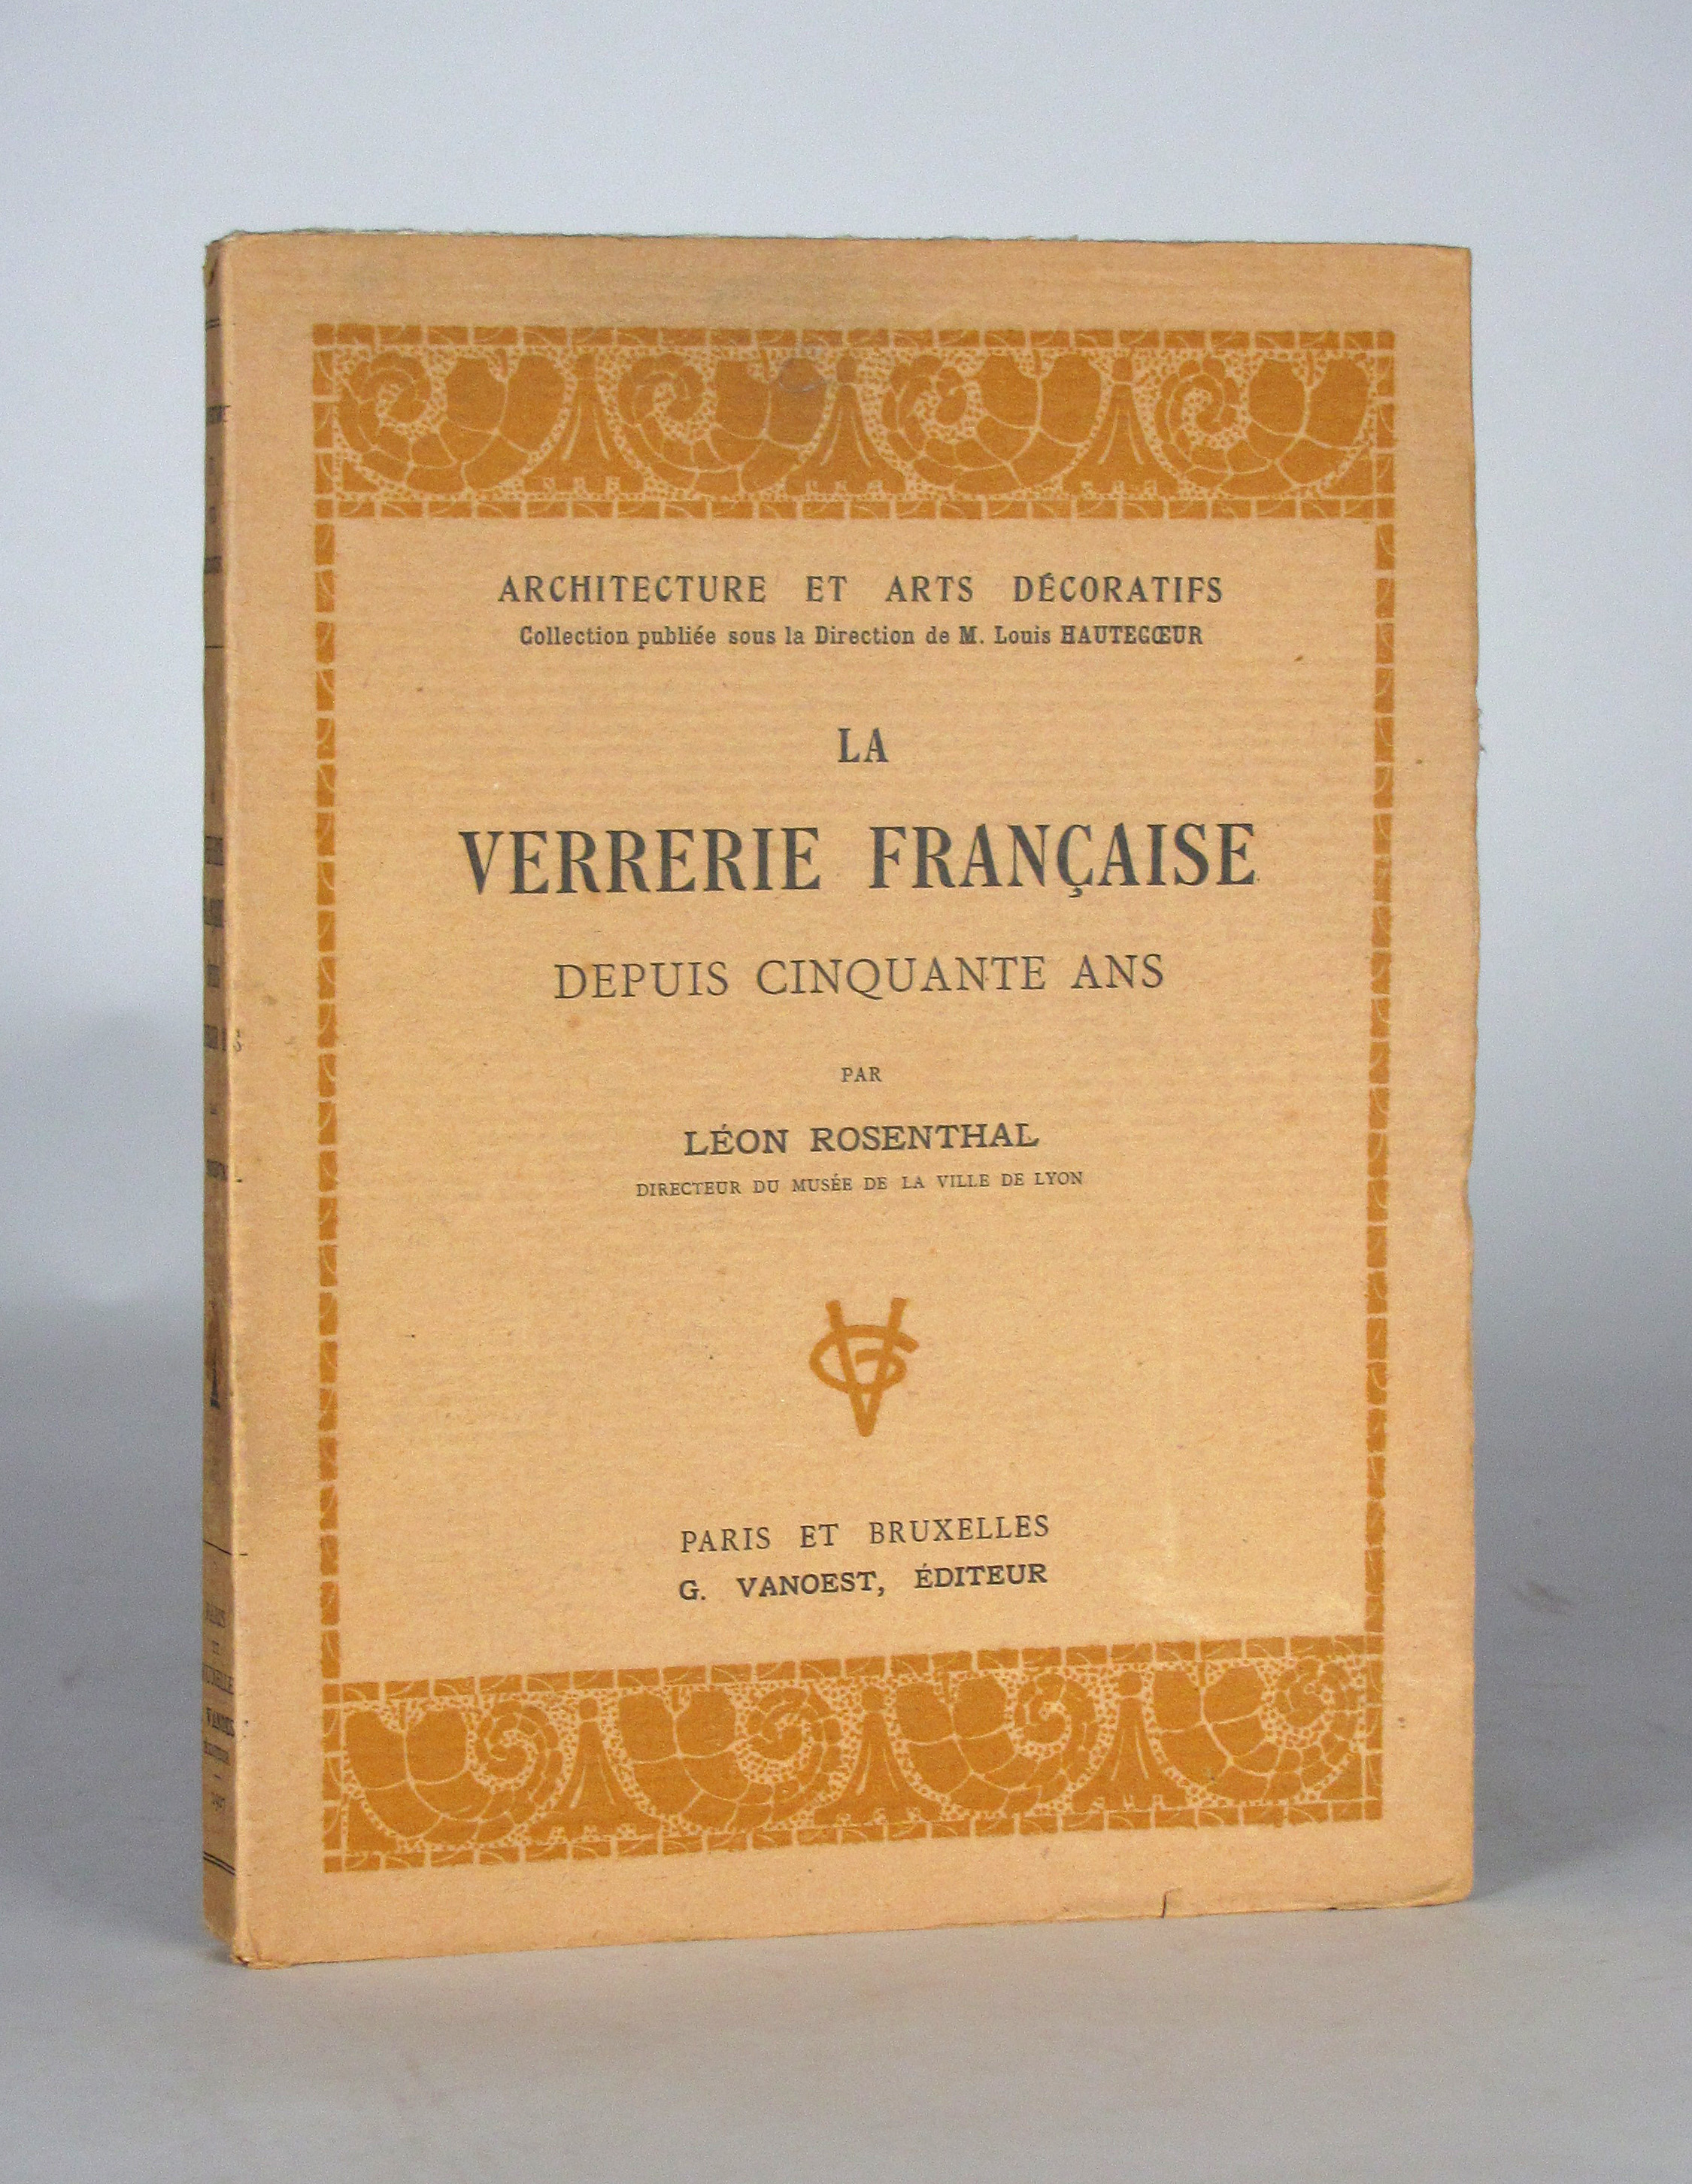 Rosenthal, Leon, La verrerie francaise depuis cinquante ans.